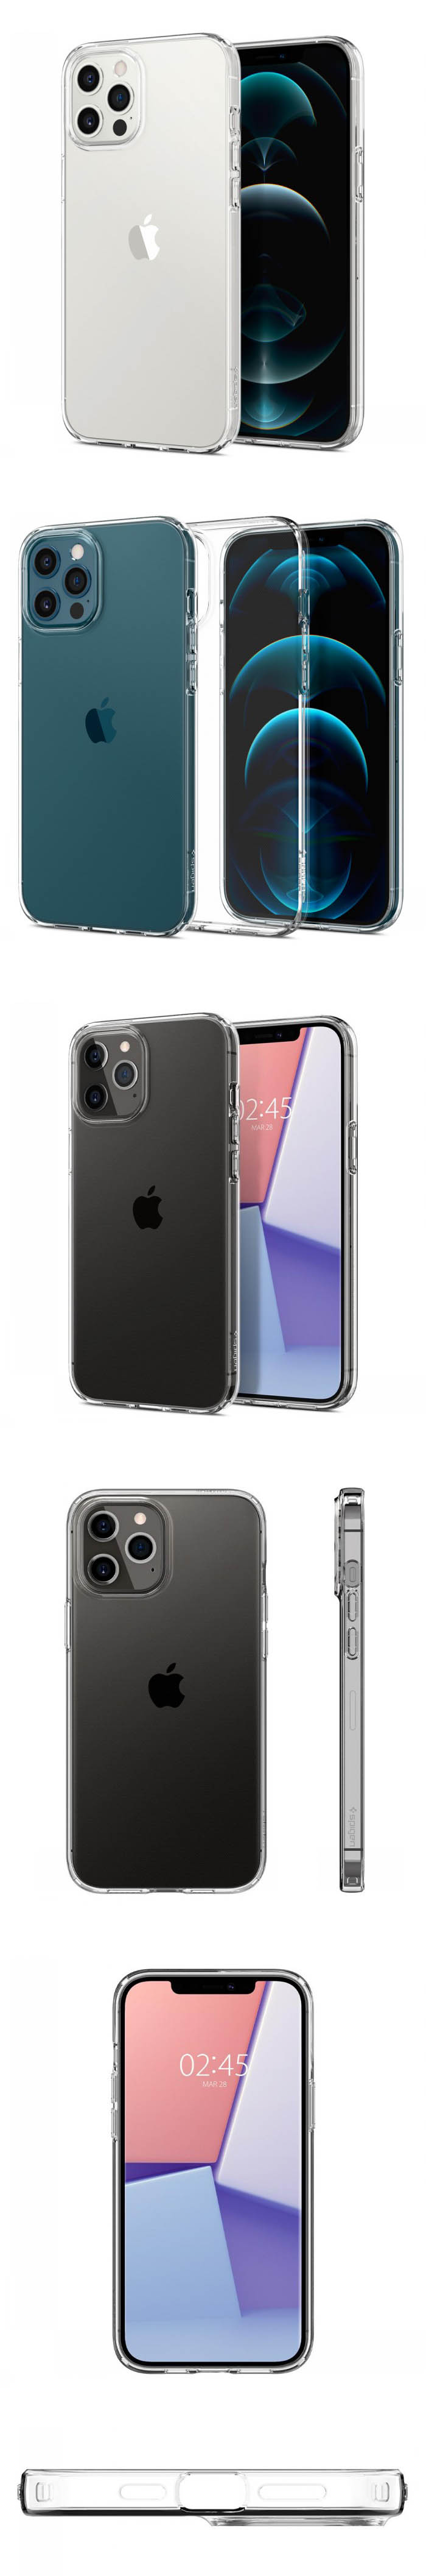 Ốp lưng iPhone 12 Pro Max Spigen Liquid Crystal 56